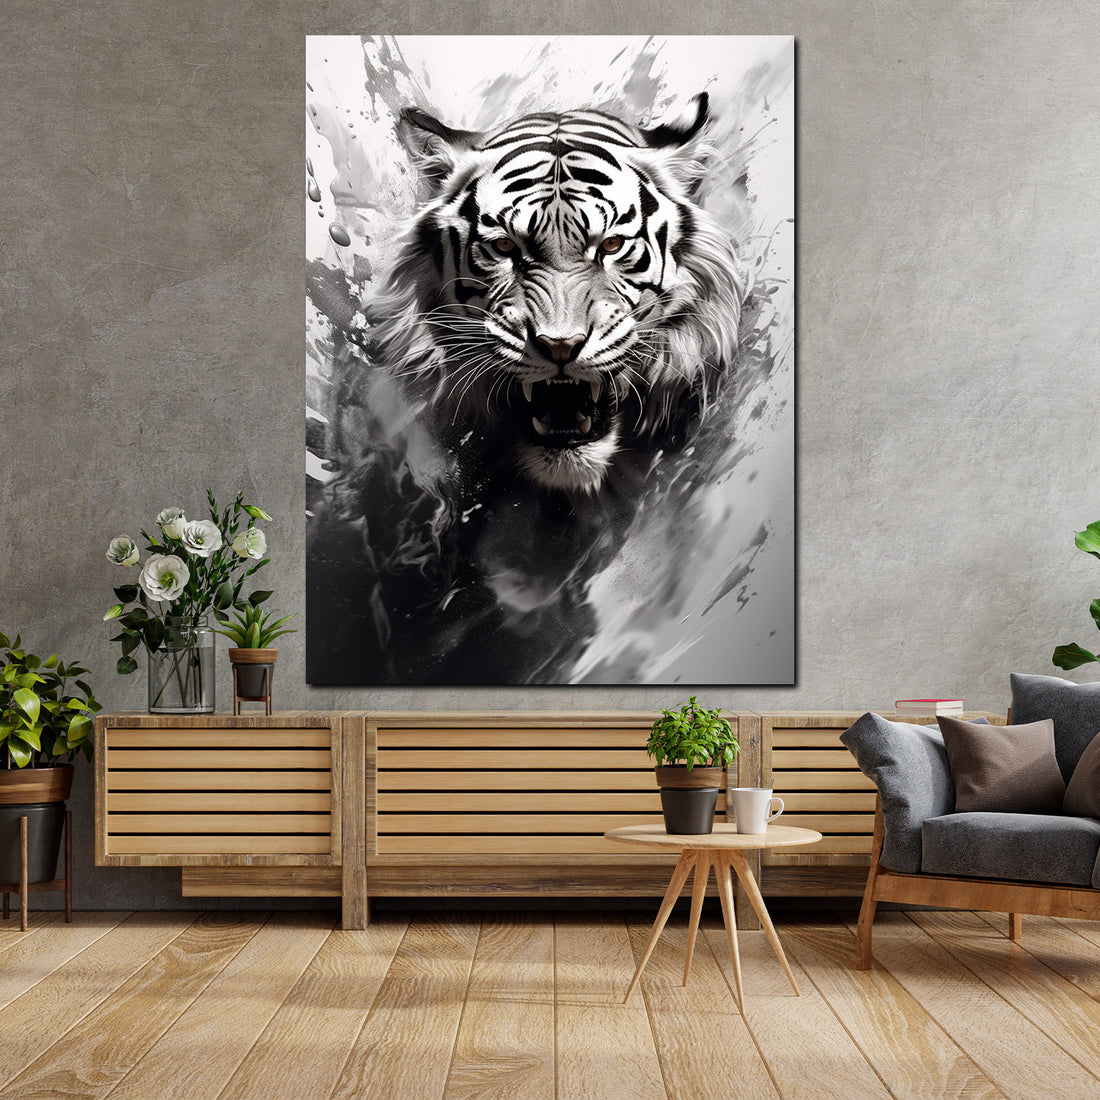 Wandbild abstrakt Tiger schwarz weiß